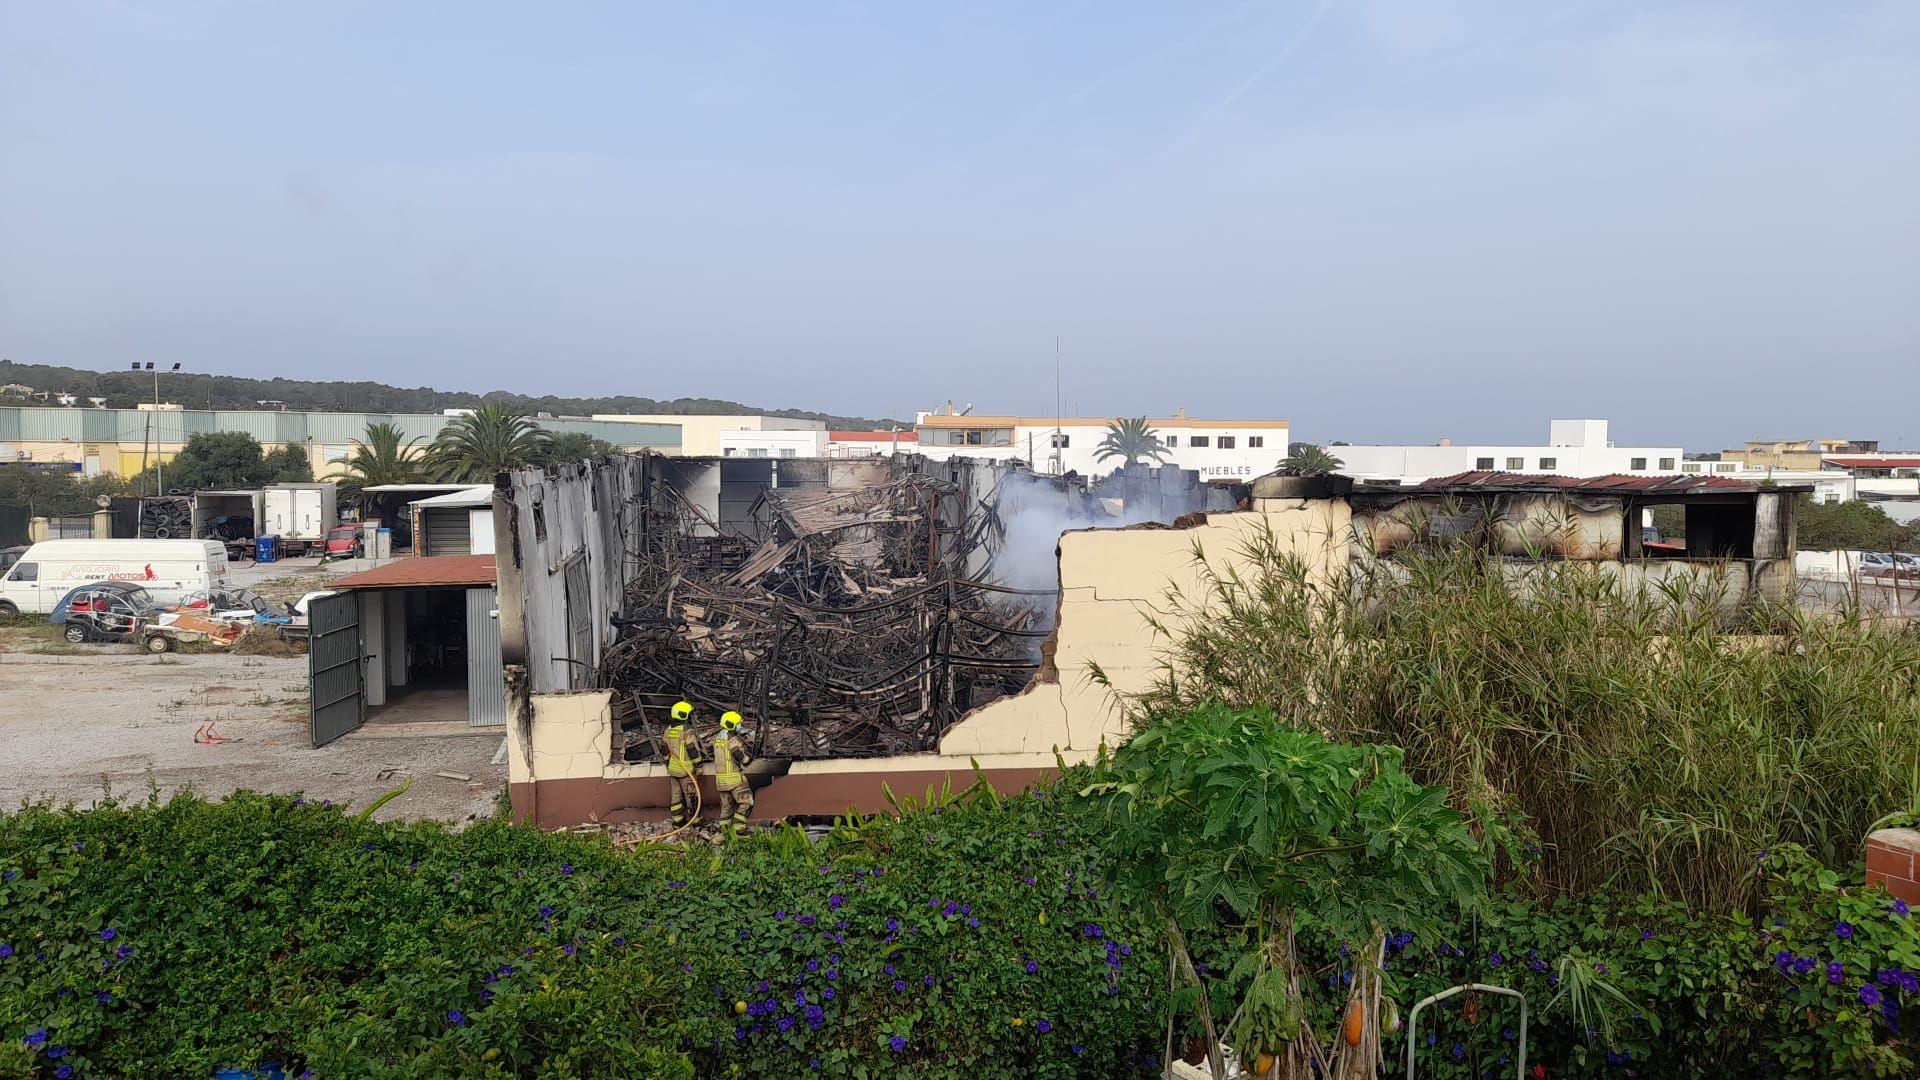 Galería de imágenes del incendio en un almacén industrial de vehículos de alquiler en Formentera